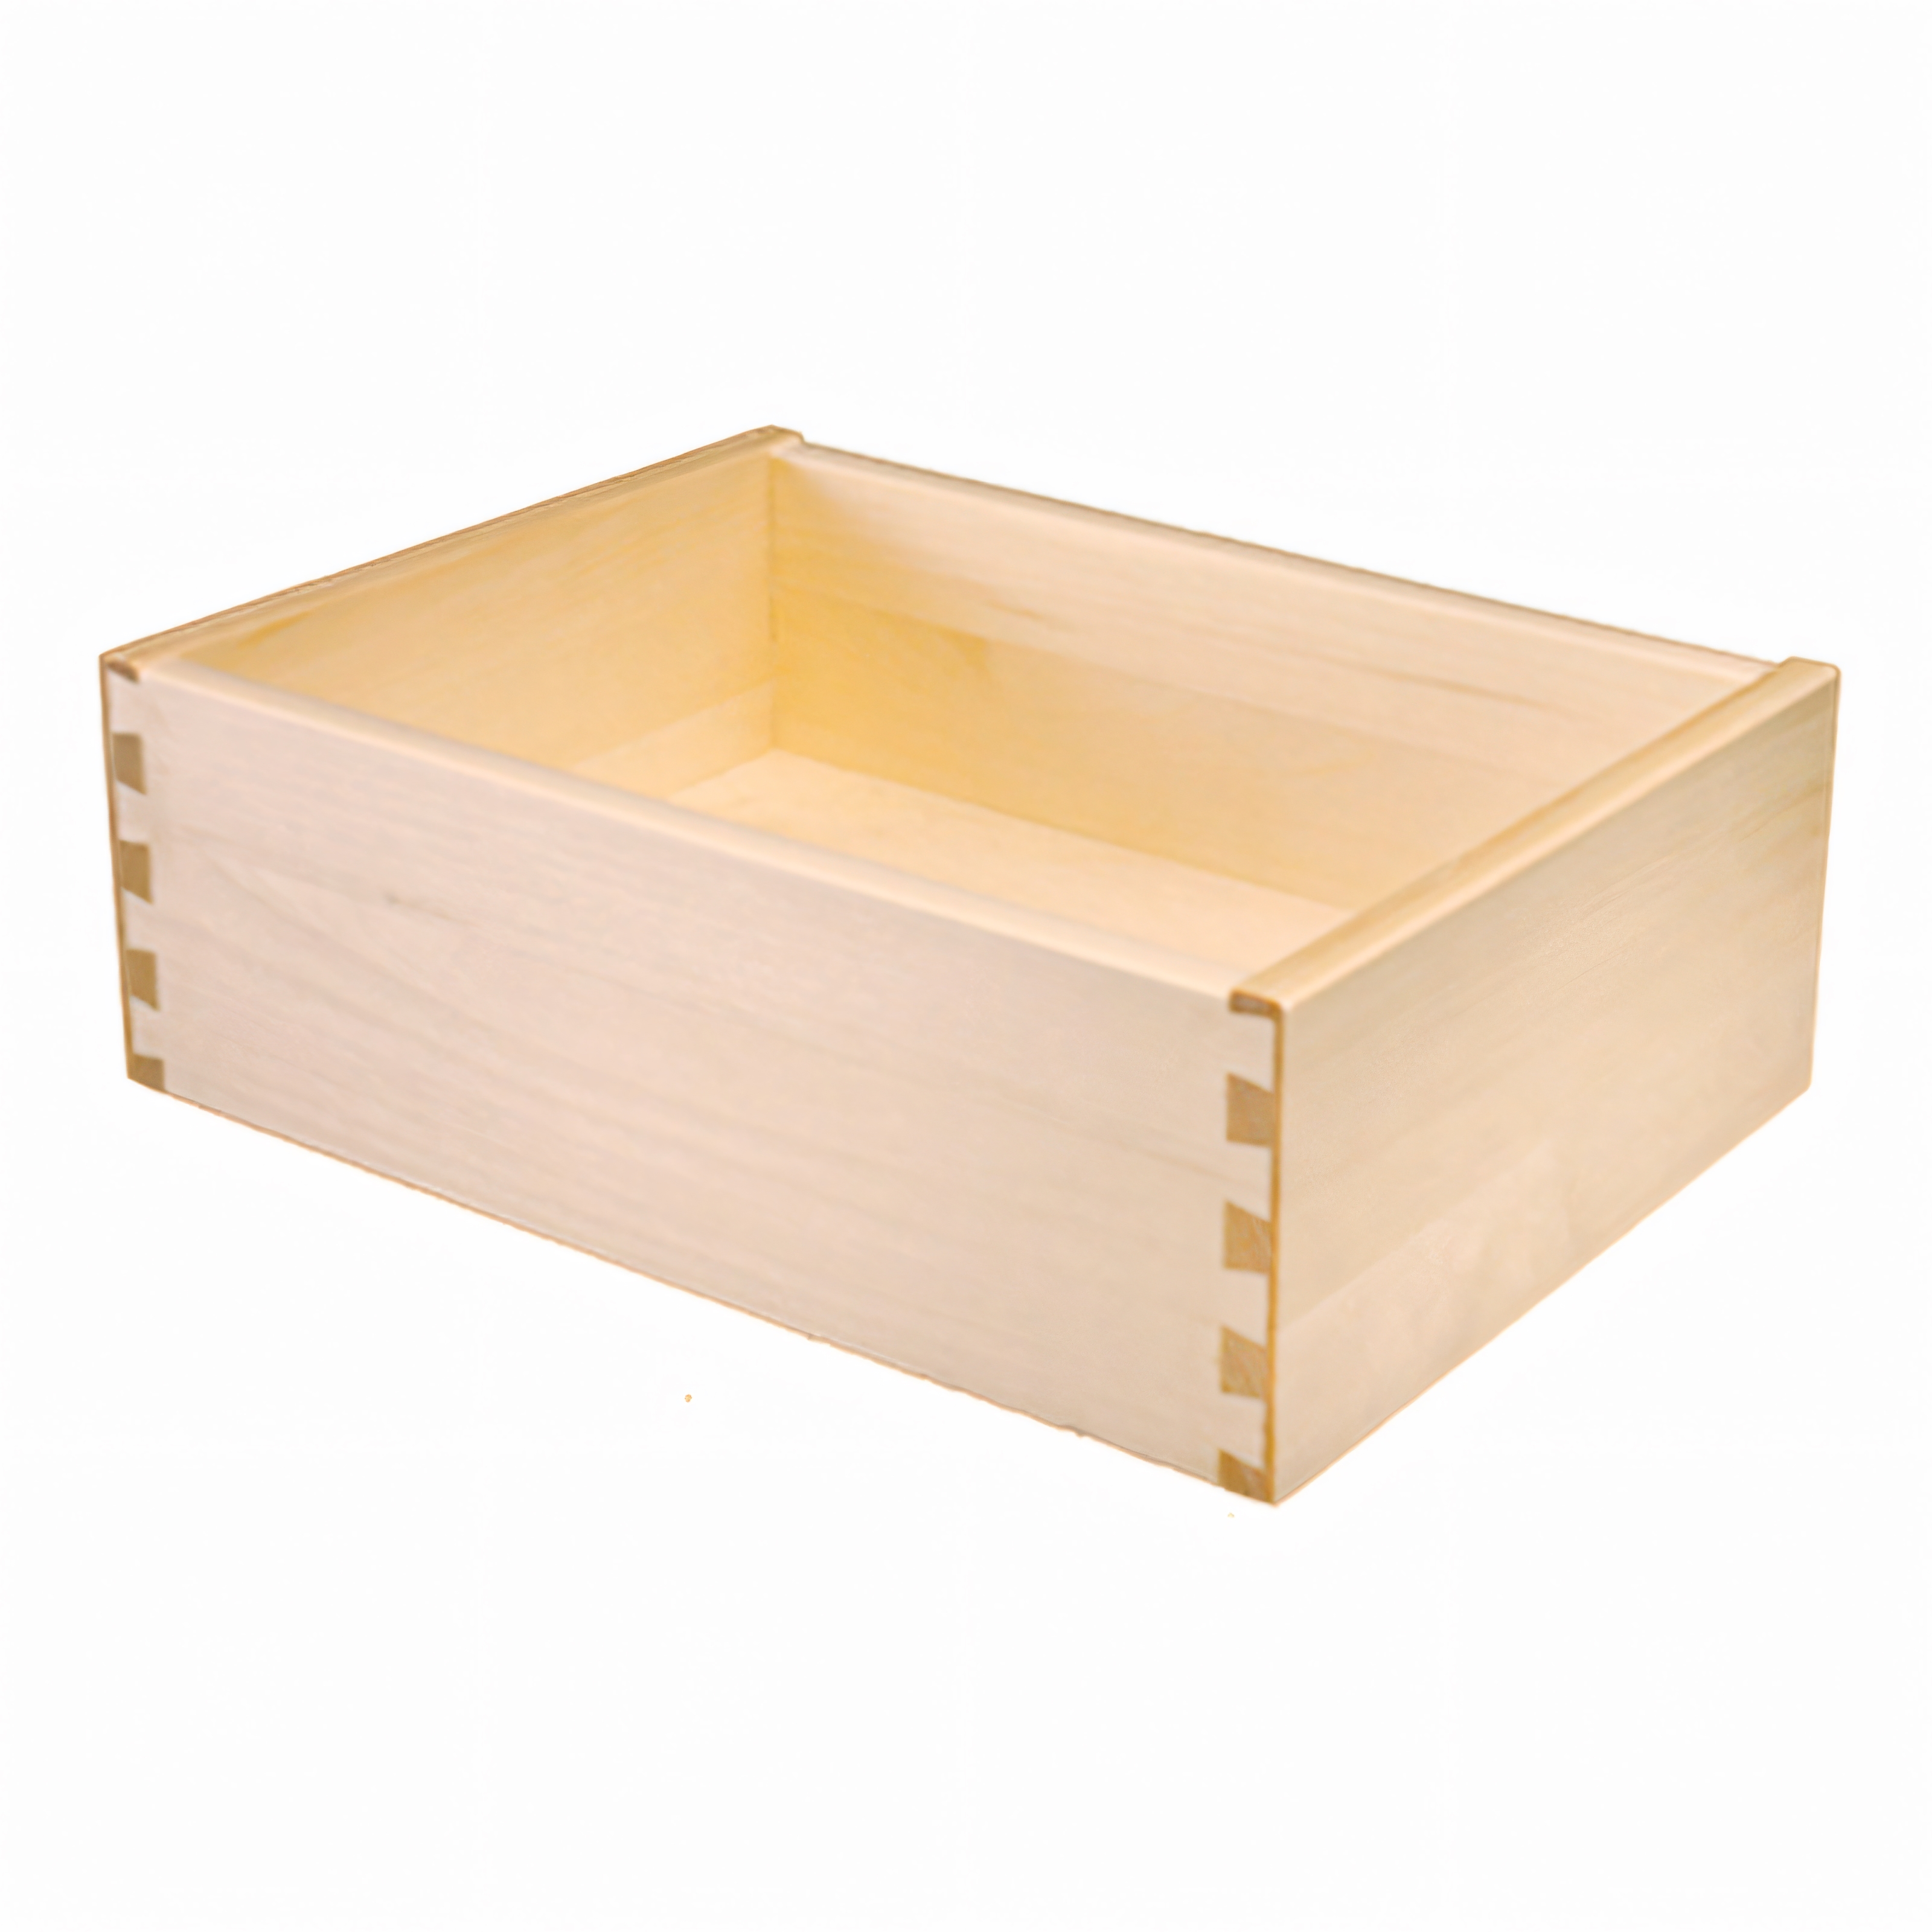 Aspen Drawer Box